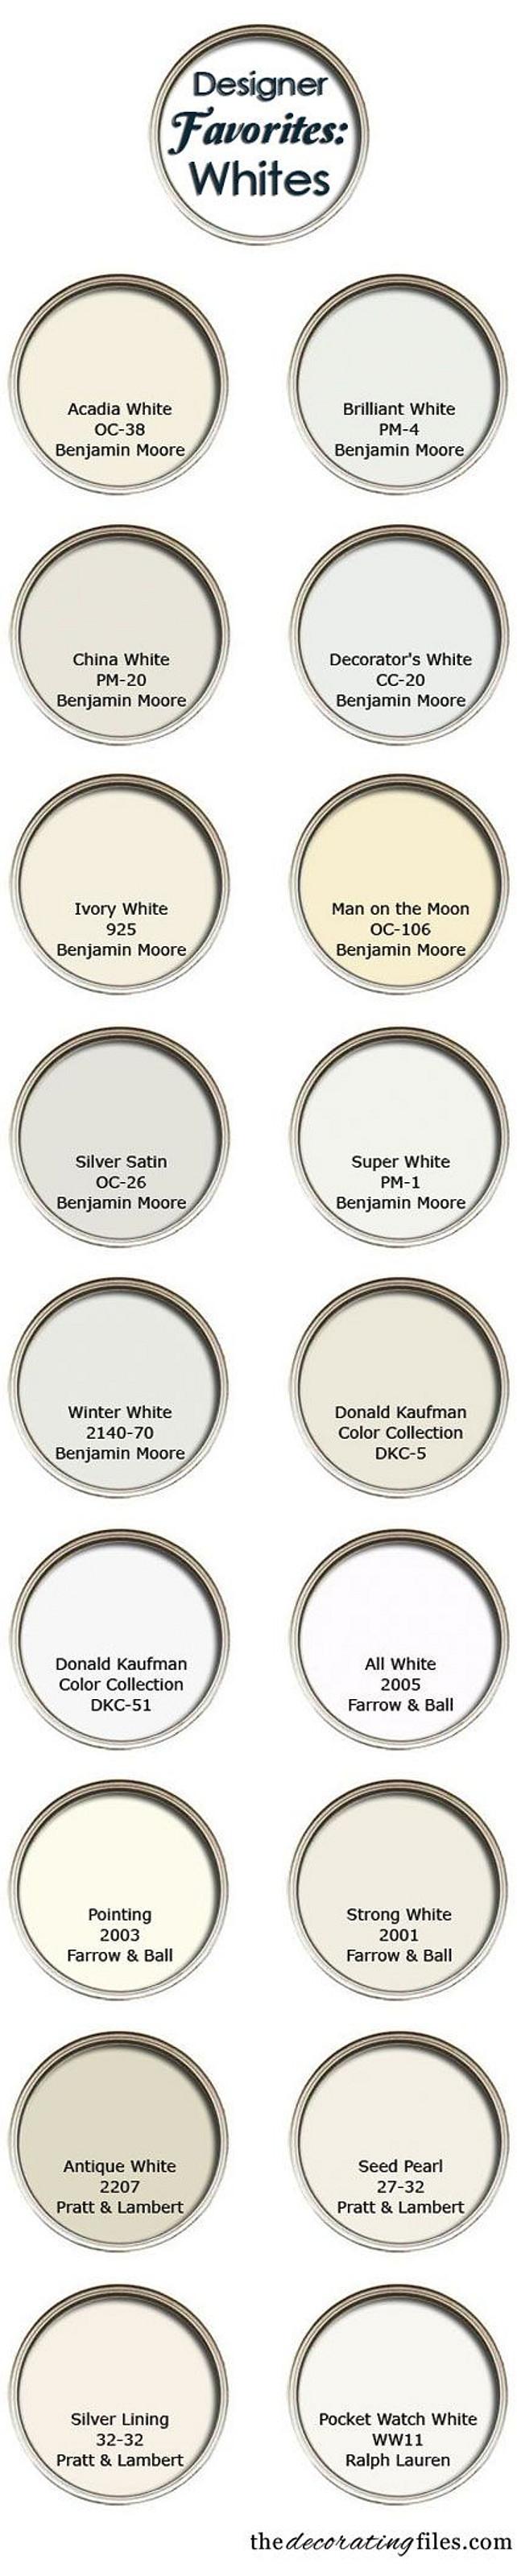 Interior Designer Favorite White Paint Color Choices. #InteriordesignerPaintChoices #PaintColor #WhitepaintColor